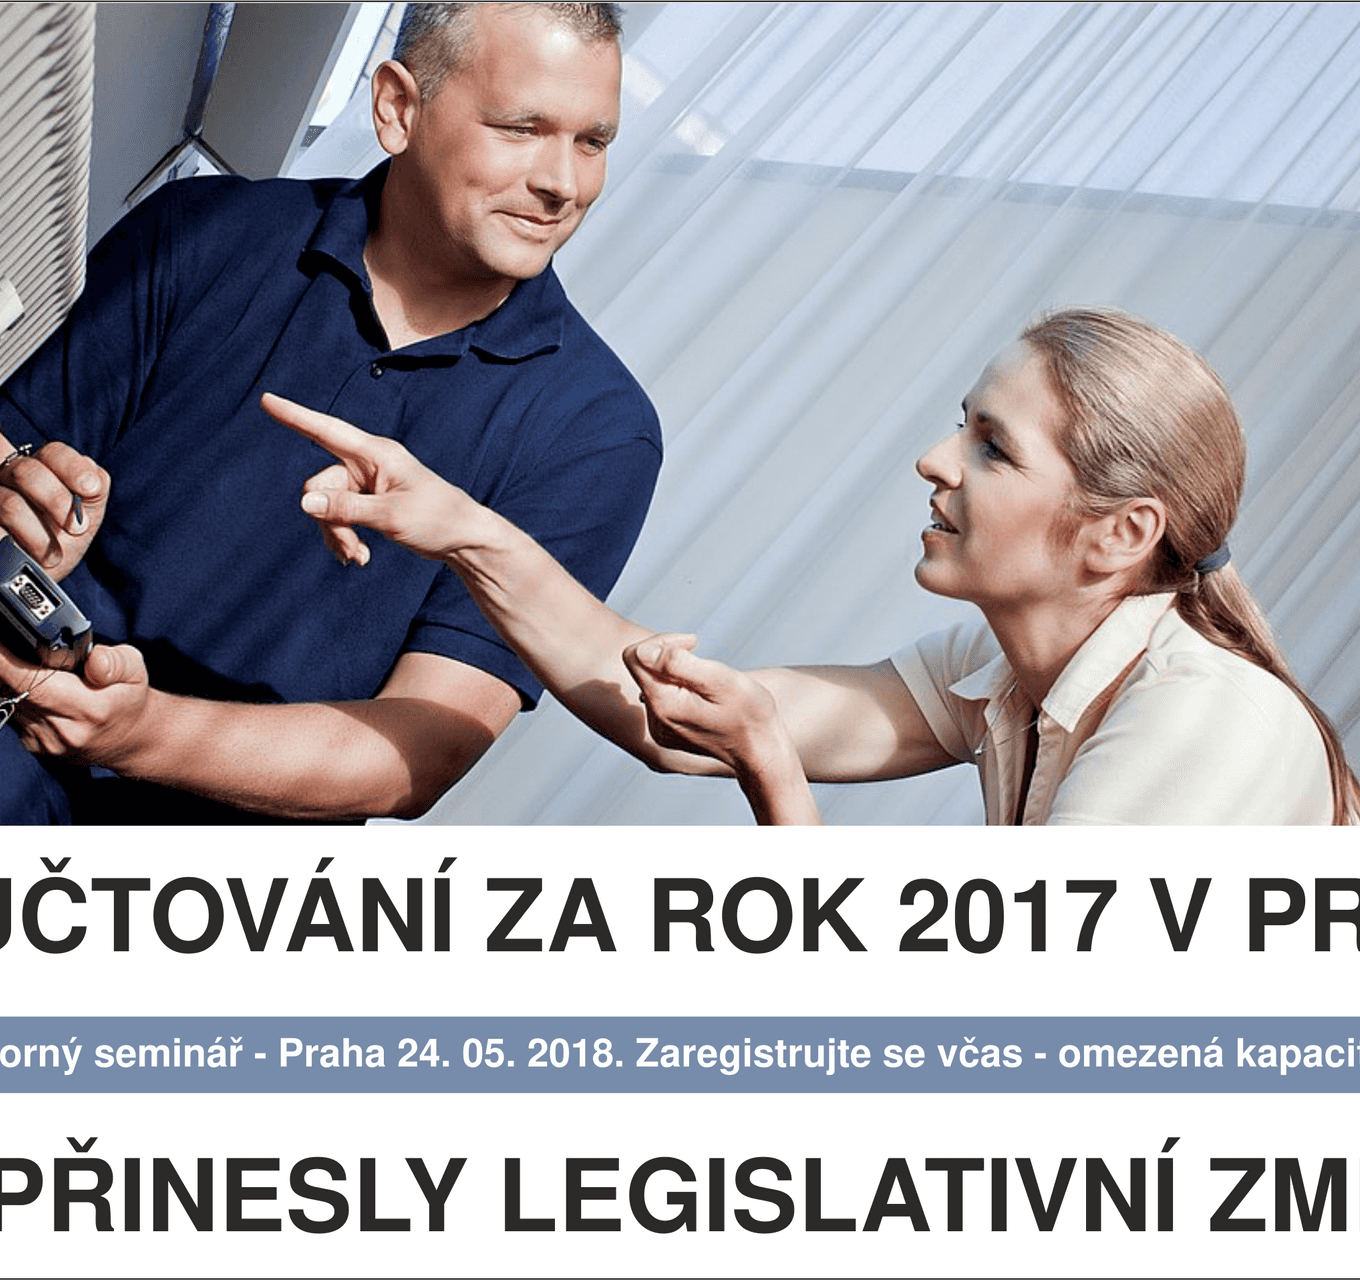 Vyúčtování za rok 2017 v praxi, co přinesly legislativní změny – odborný seminář, přijďte 24. 5.!